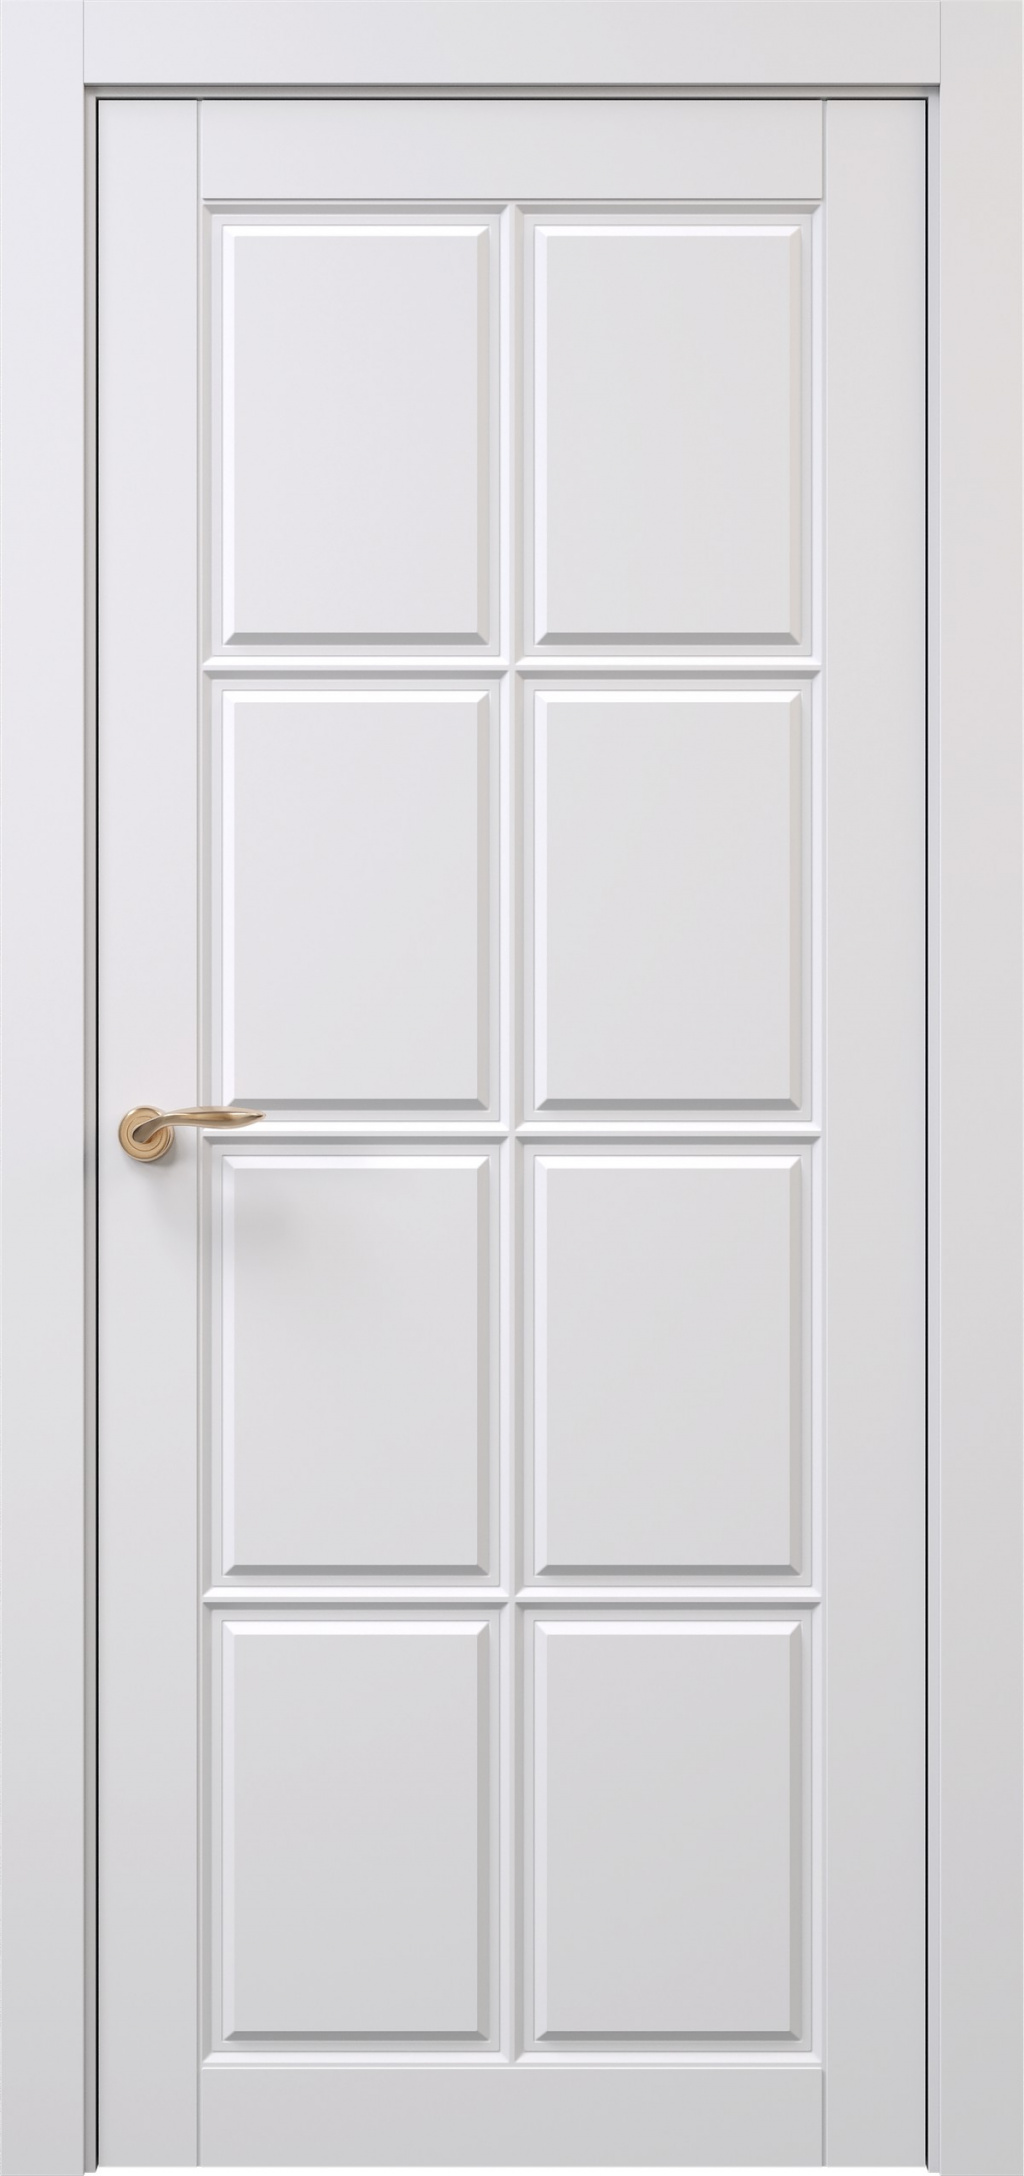 Prestige Межкомнатная дверь Oxford 3 ДГ, арт. 29215 - фото №1